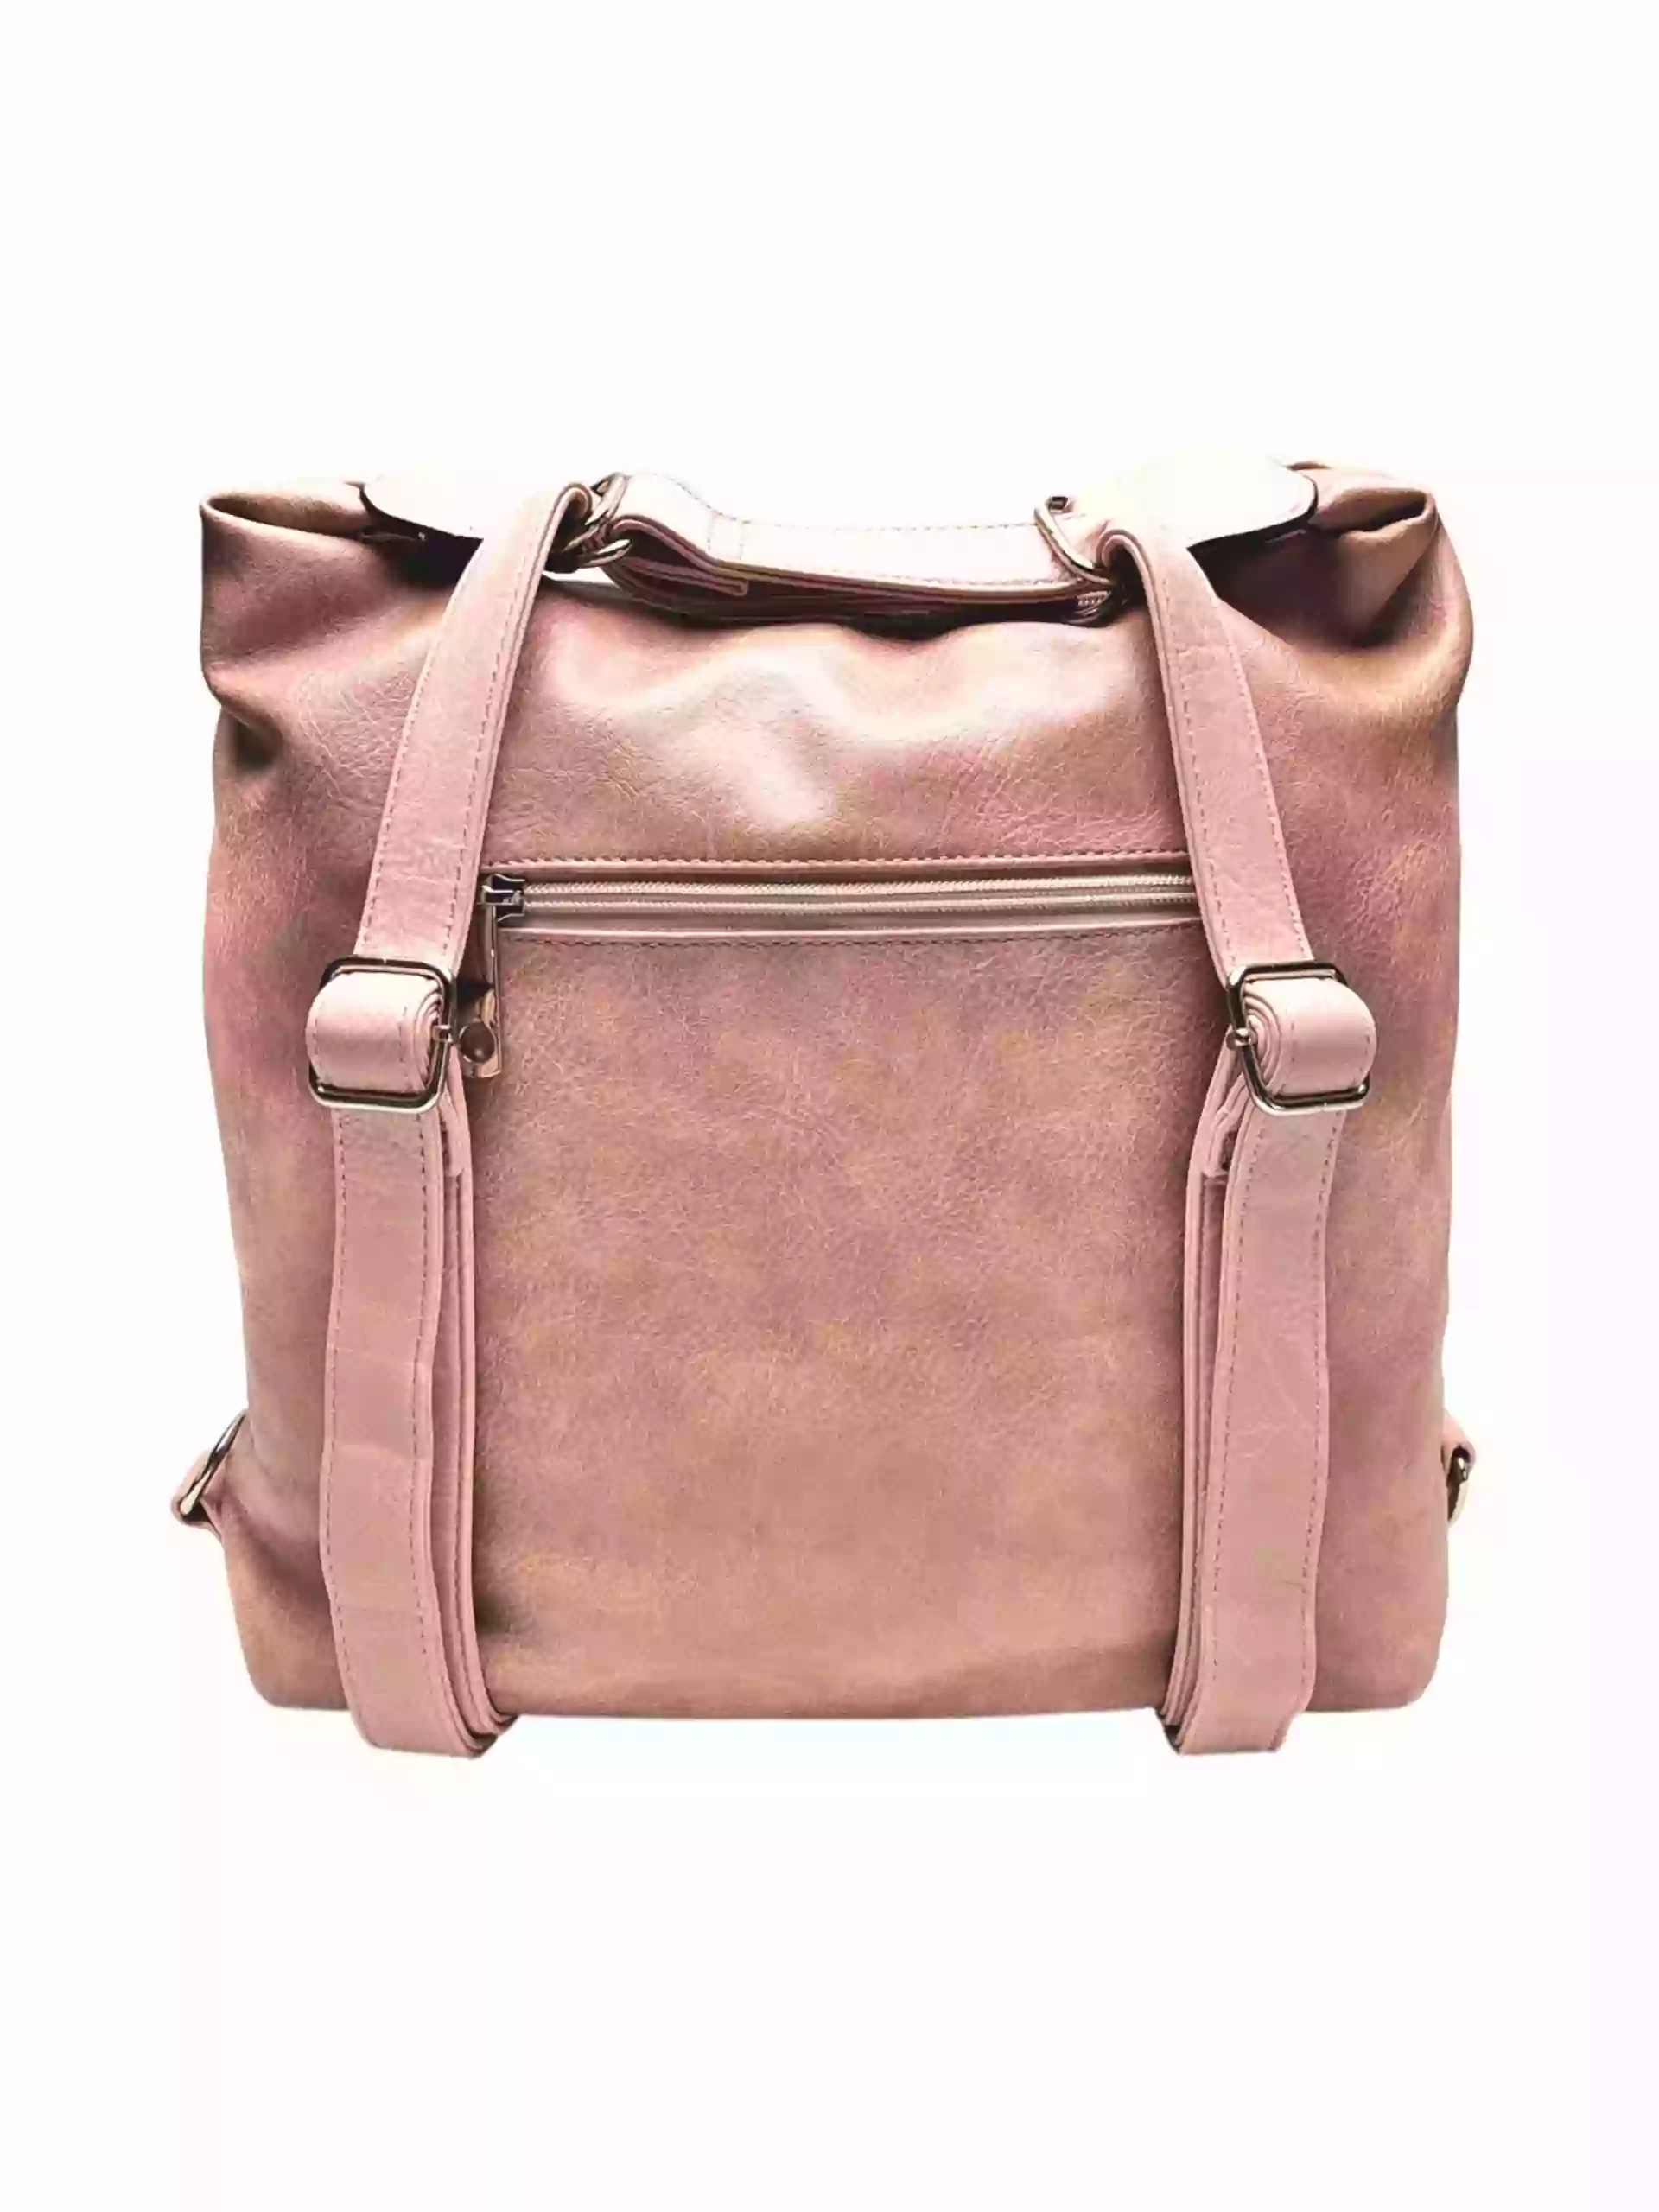 Moderní starorůžový kabelko-batoh z eko kůže, Tapple, H190010, zadní strana kabelko-batohu 2v1 s popruhy